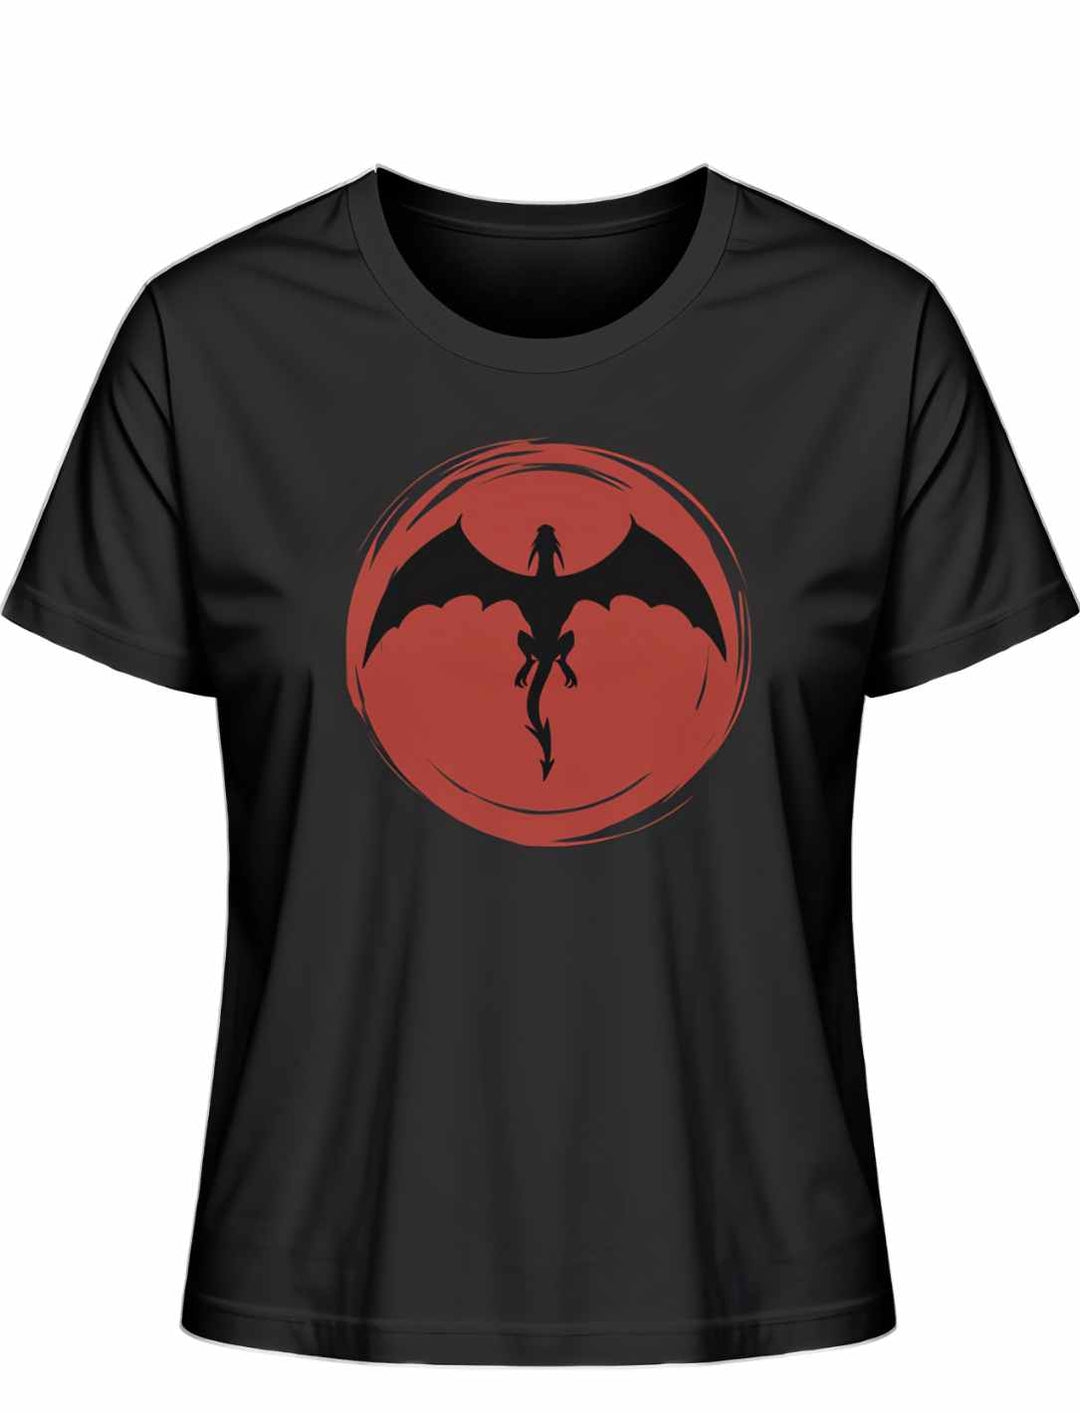 Schwarzes 'Saga of the Dragon' T-Shirt in Liegeansicht auf weißem Hintergrund, hervorhebend das detailreiche Drachenmotiv.